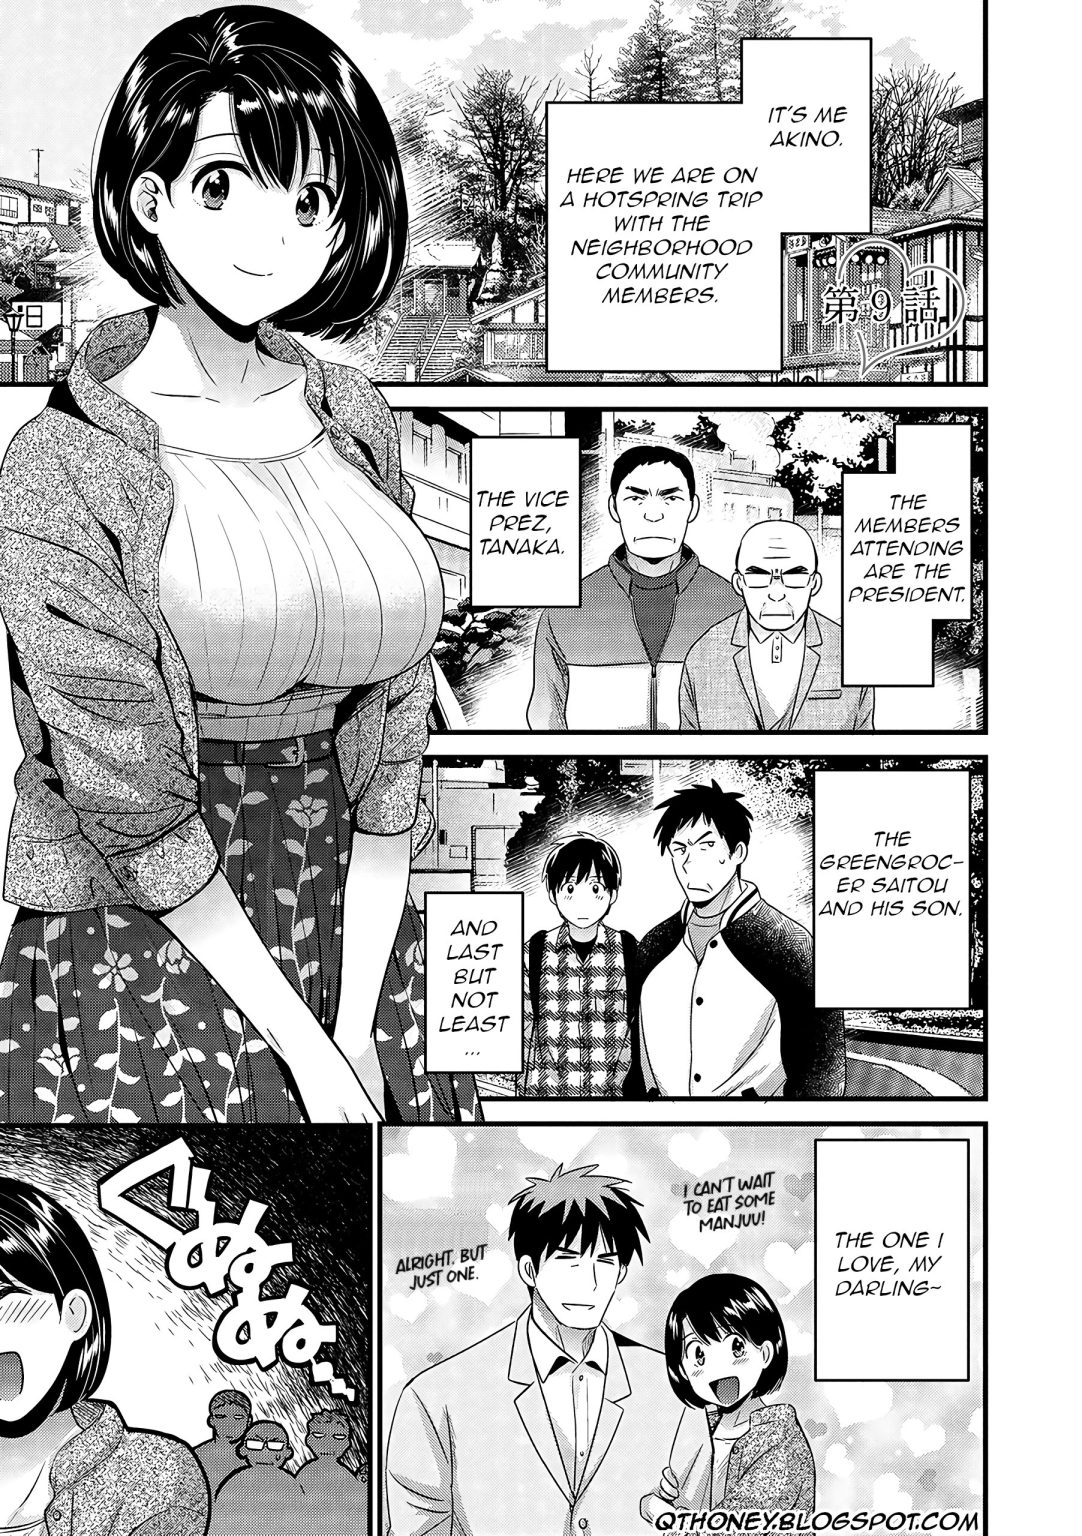 Shujin ni wa Naisho 9 hentai manga picture 1